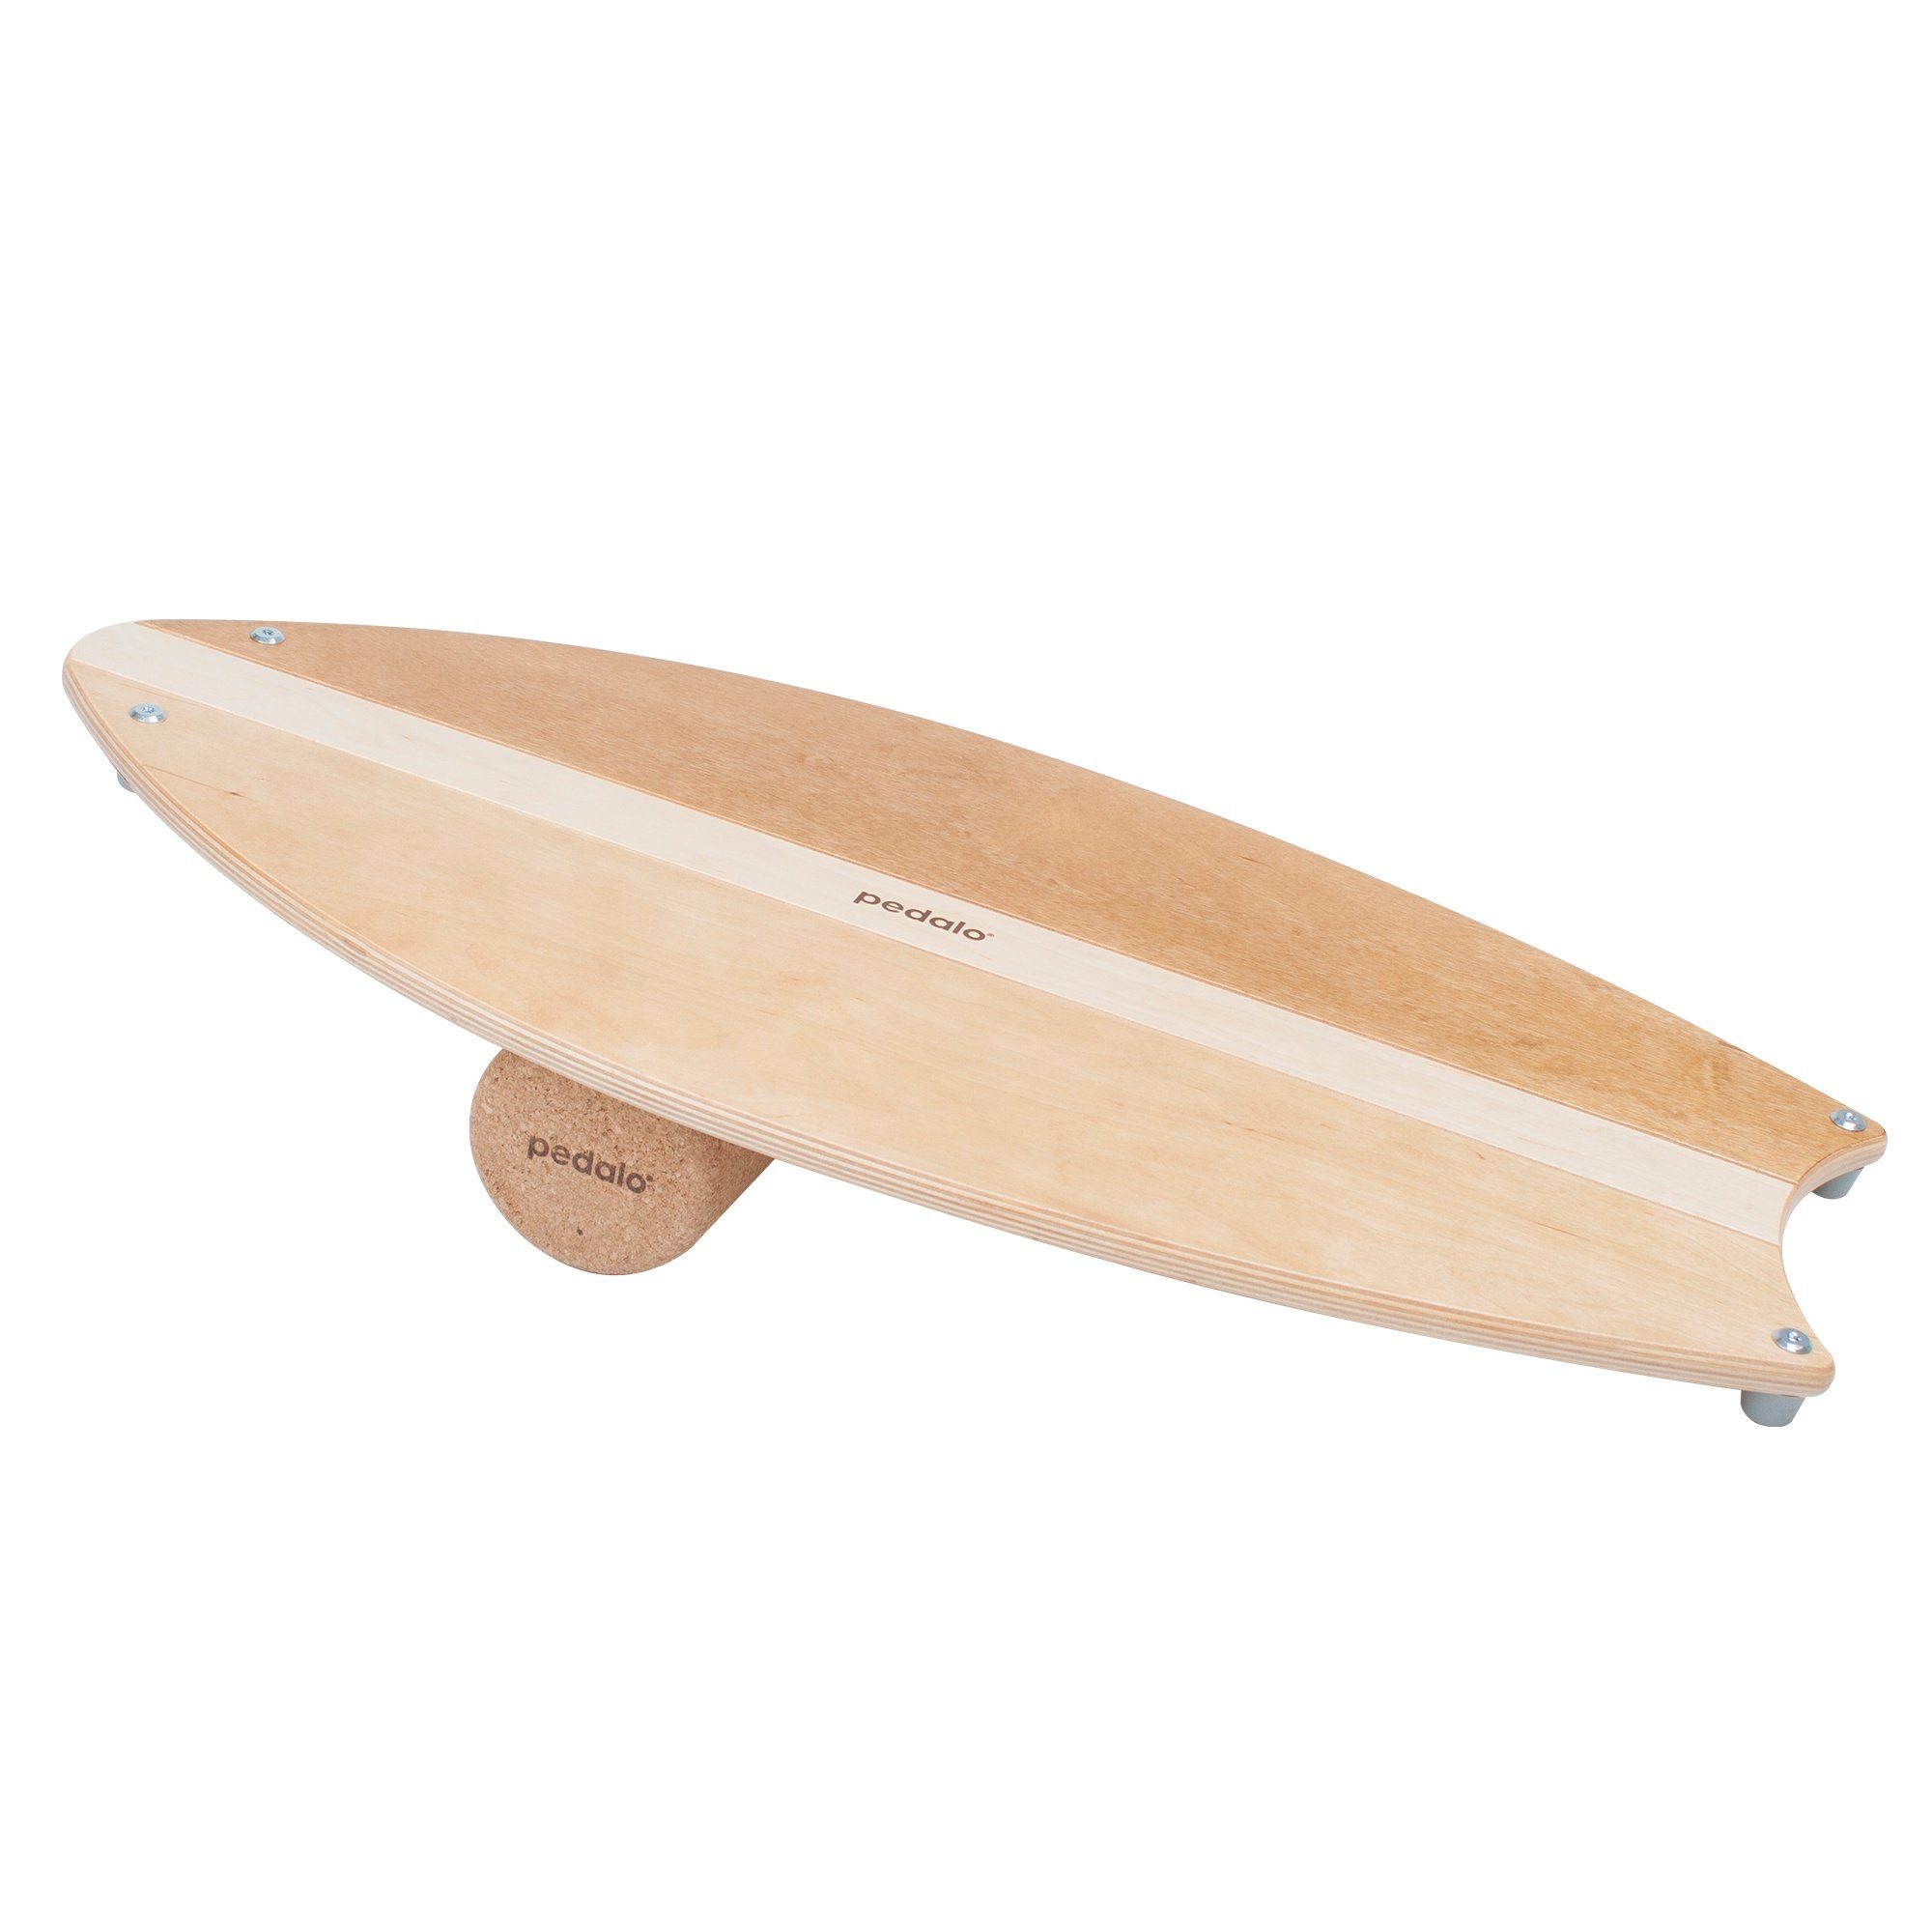 Kreisel, in Balanceboard Triple Balance Board Wippbrett, Board einem pedalo® Gleichgewichtstrainer, Balance